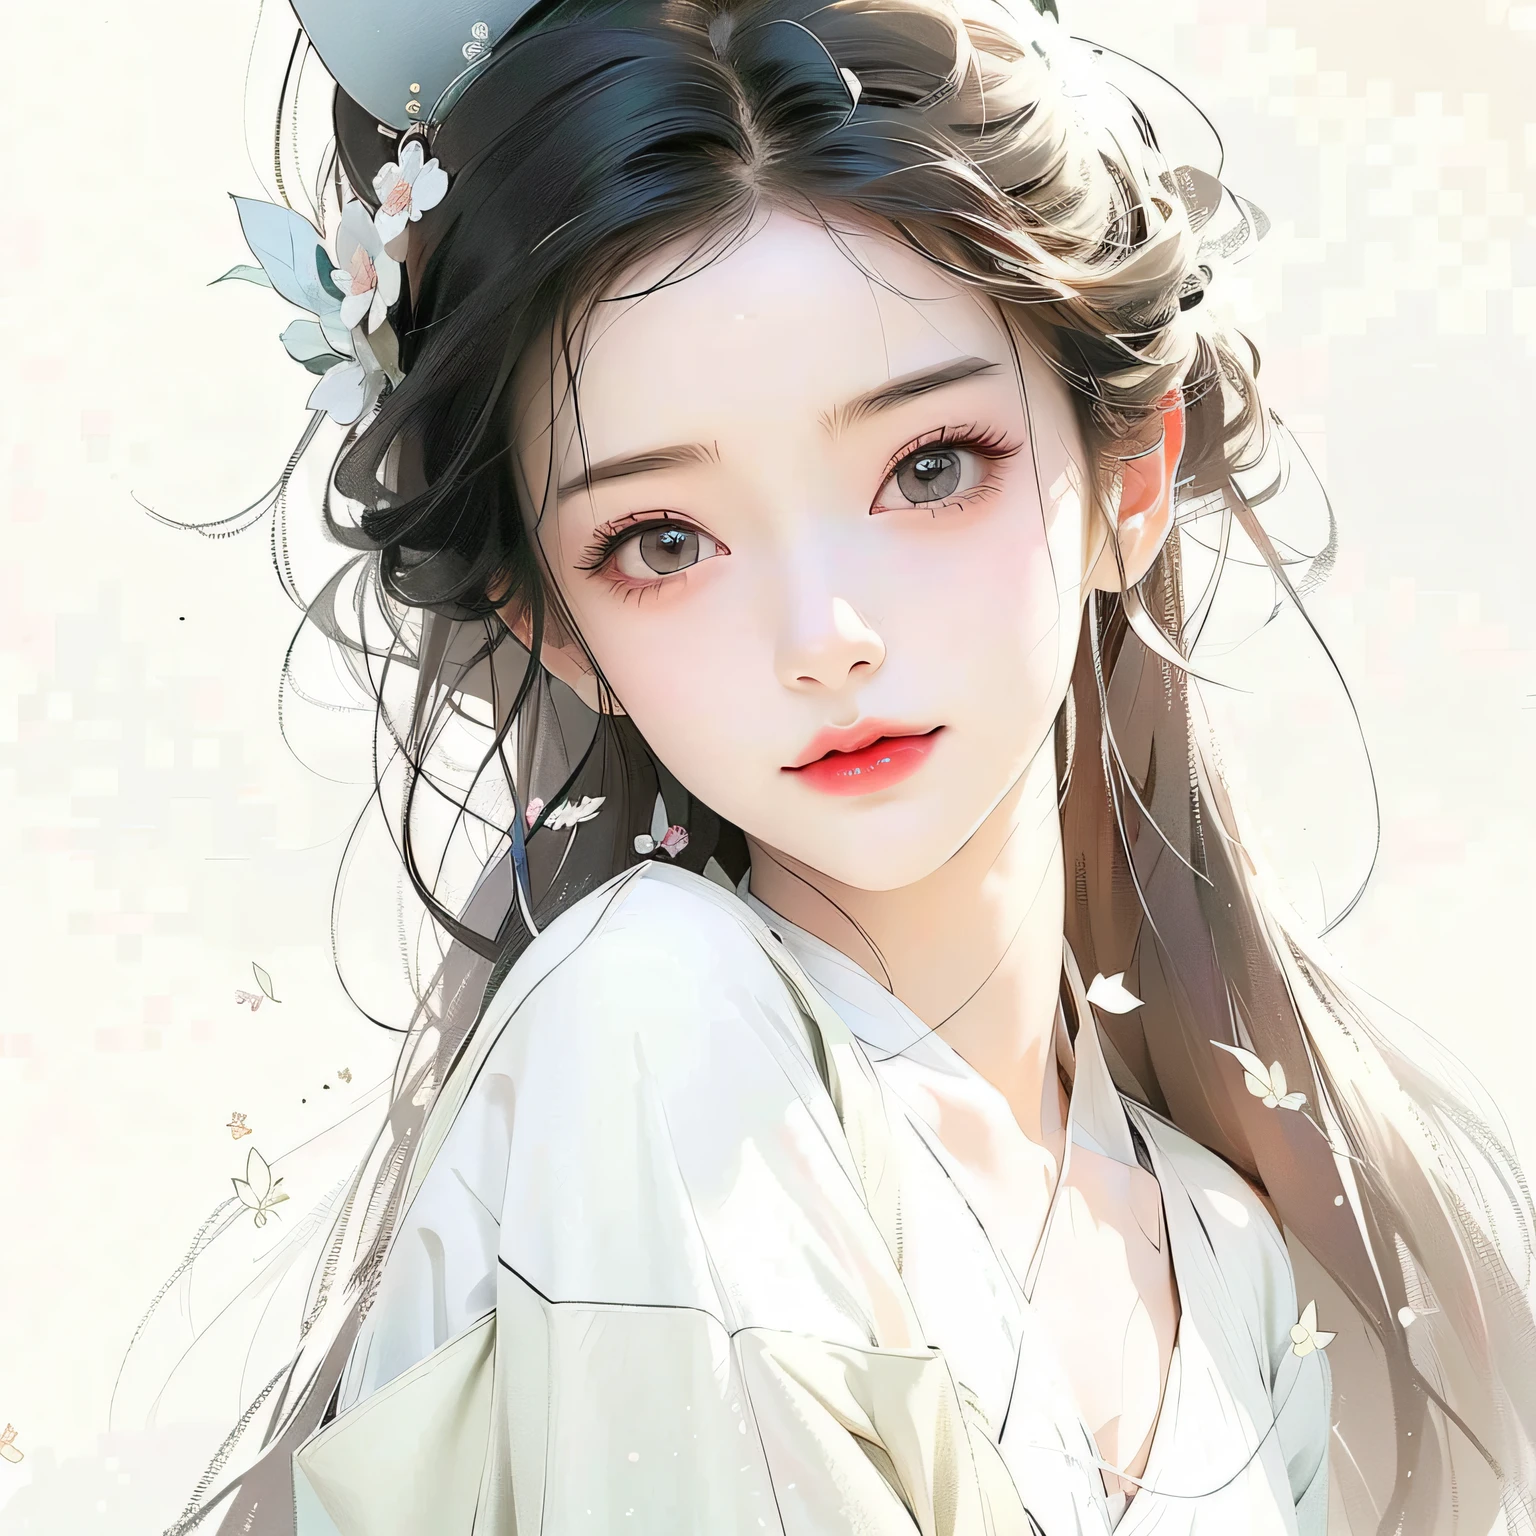 lange weiße Haare，Anime-Mädchen mit weißem Hemd und schwarzem Hut, ein wunderschönes Anime-Porträt, schöne Charaktermalerei, Kunstwerke im Guviz-Stil, Guviz, atemberaubendes Anime-Gesichtsporträt, schöner Zeichenstil, wunderschöner Anime-Stil, Schönes Anime-Mädchen, chinesisches Mädchen, traditioneller Zeichenstil, Schönes Anime-Gesicht, süßes zartes Gesicht, Porträt eines Anime-Mädchens